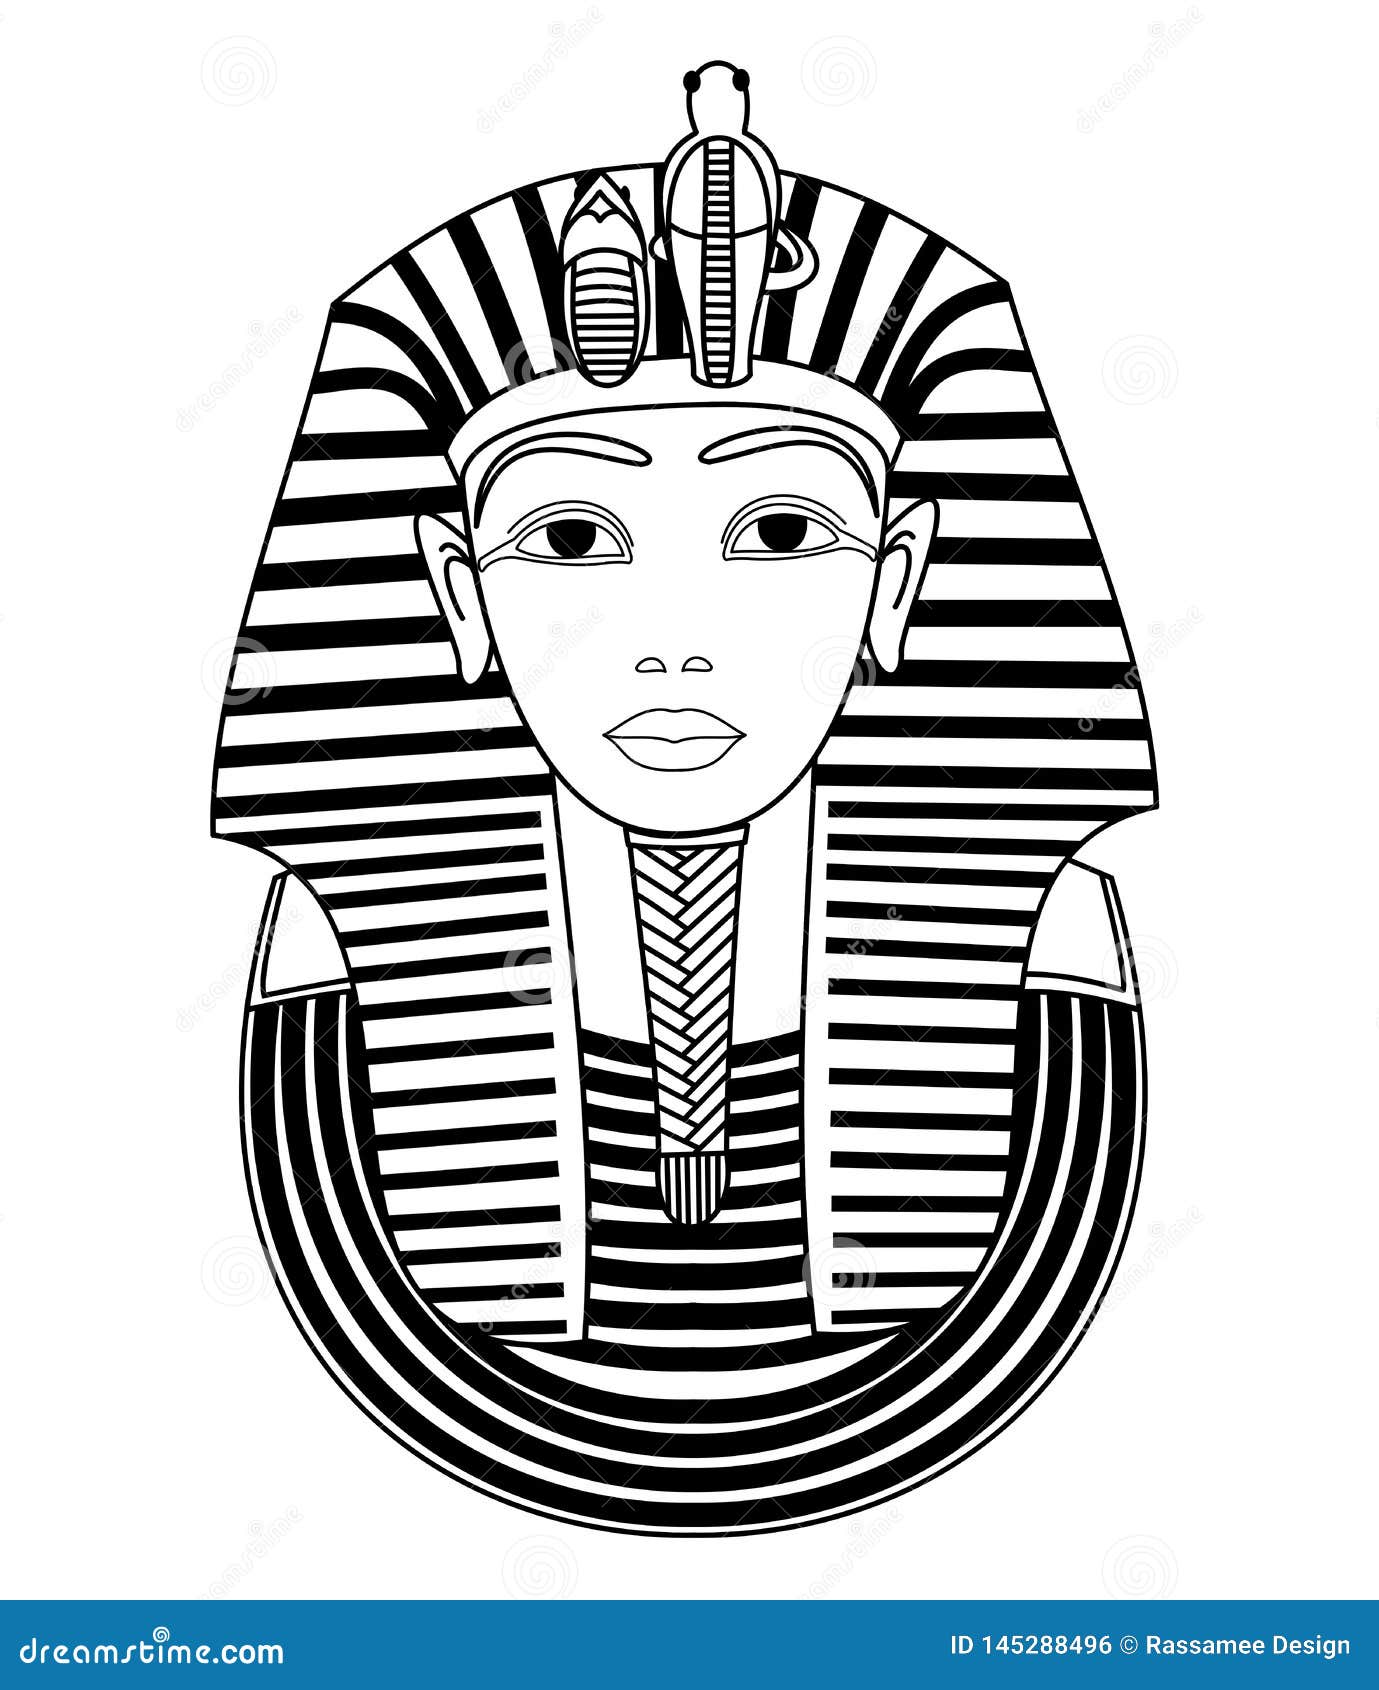 Маска фараона рисунок 5. Маска фараона Тутанхамона изо. Маска Тутанхамона рисунок 5. Фараон Египта Тутанхамон эскиз. Маска фараона Тутанхамона изо 5.